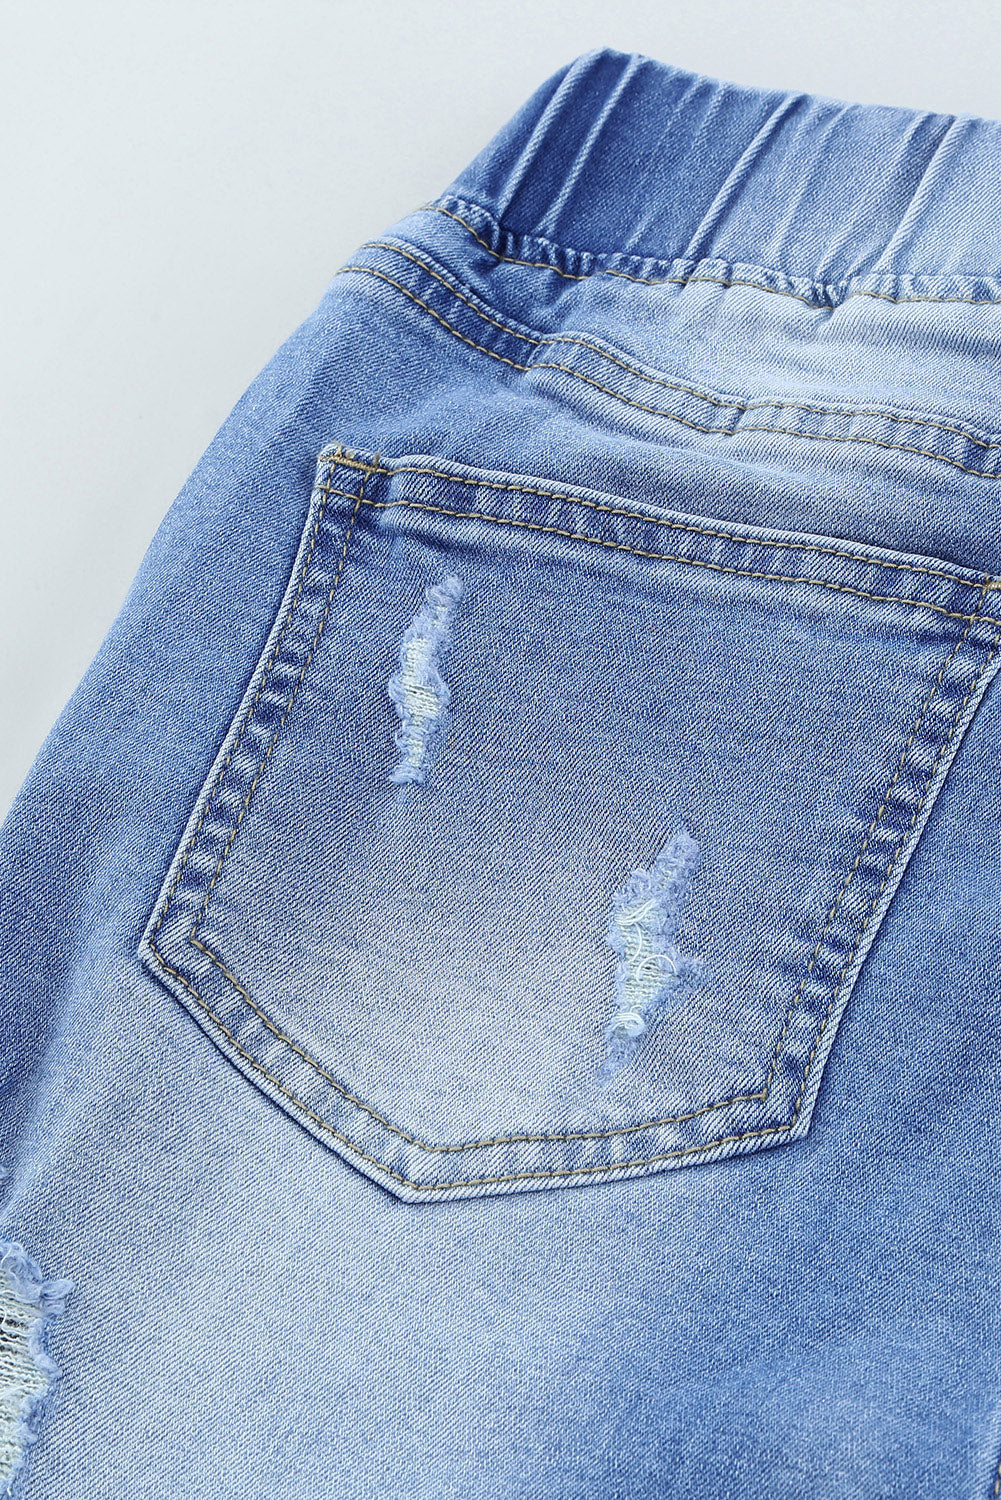 Jeans strappati con foro elastico in vita con coulisse blu cielo